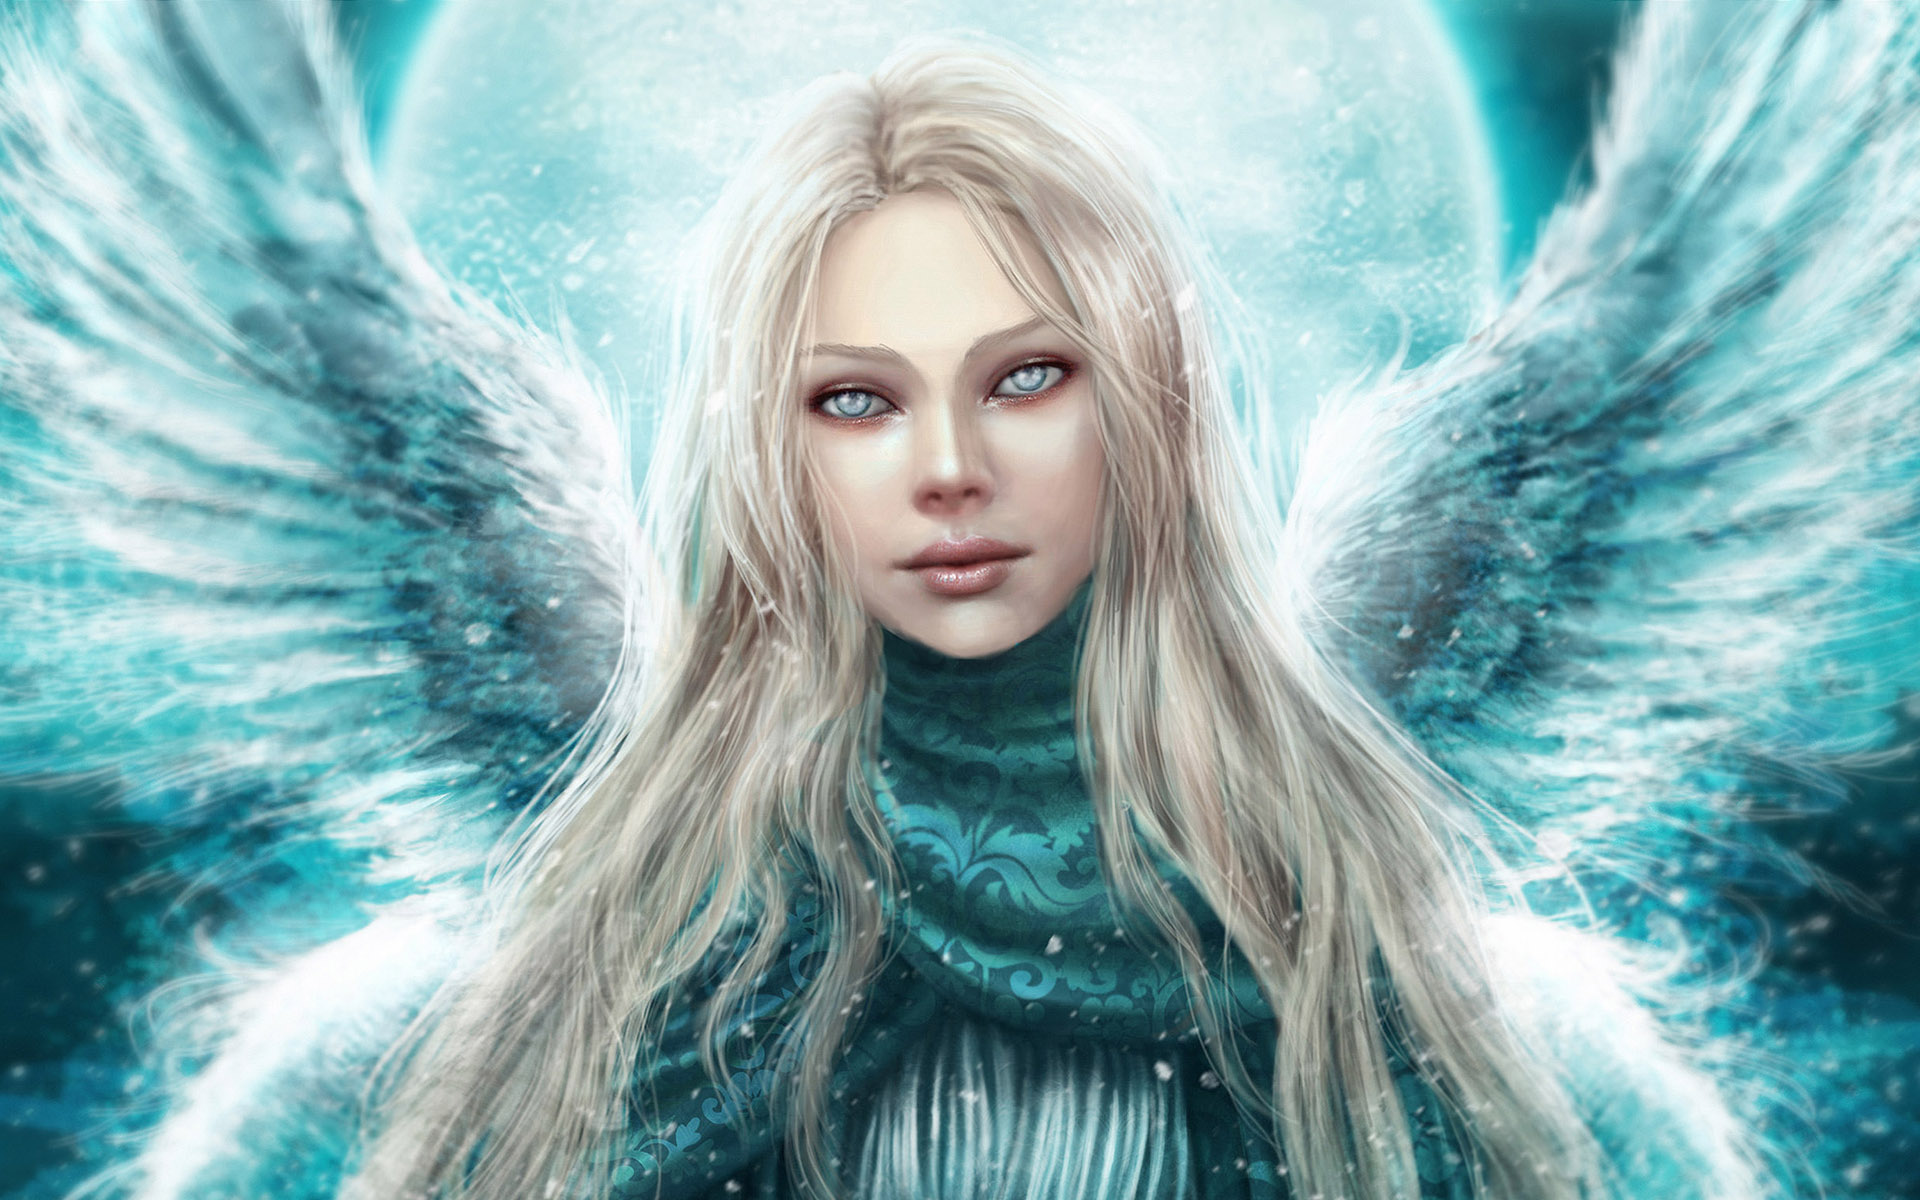 Angel Celestial by Gracjana Zielinska